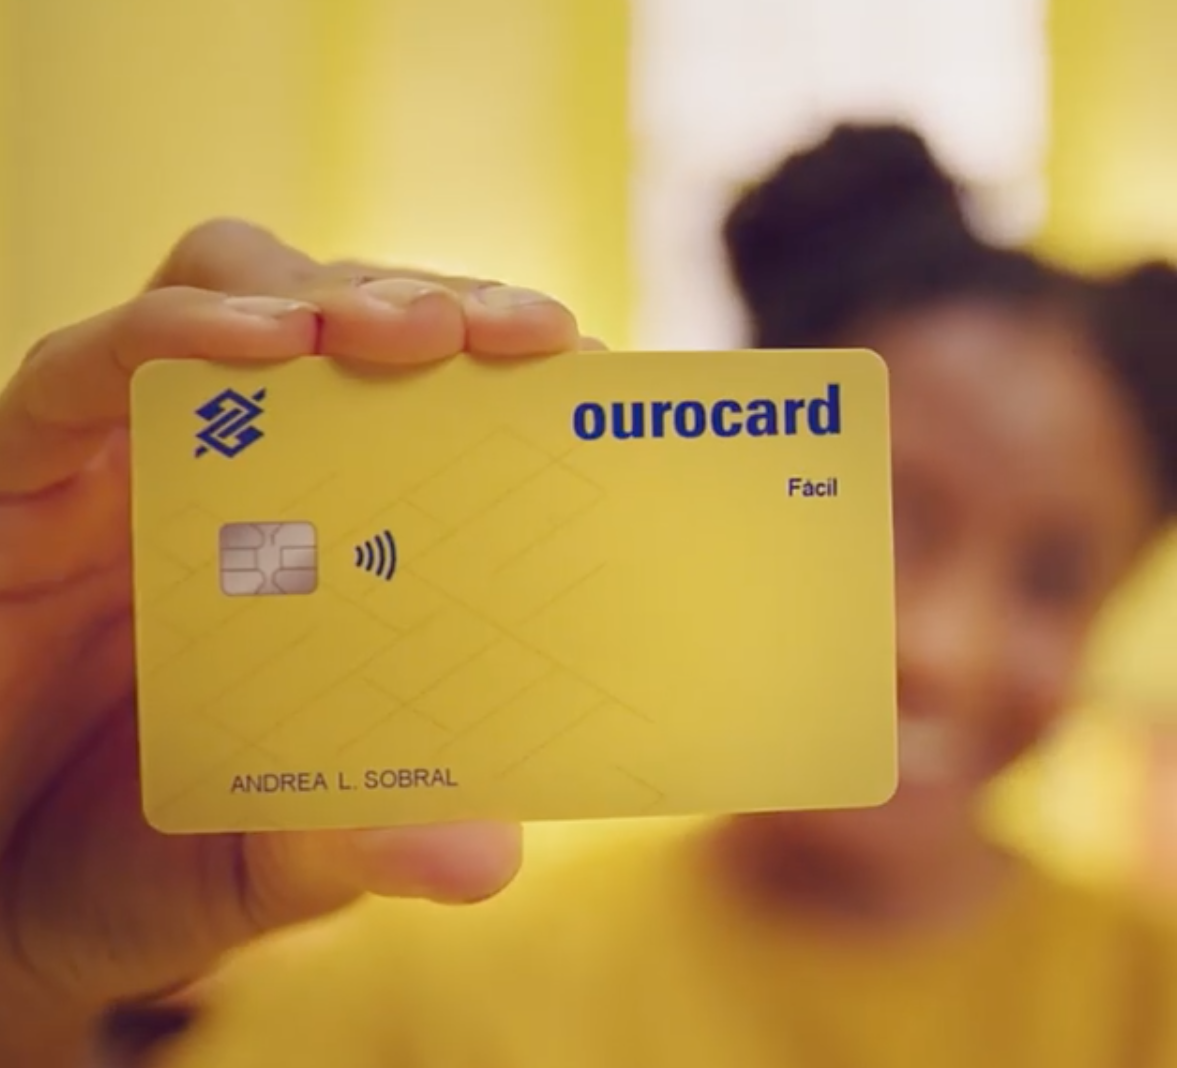 Cartão de crédito Ourocard Banco do Brasil